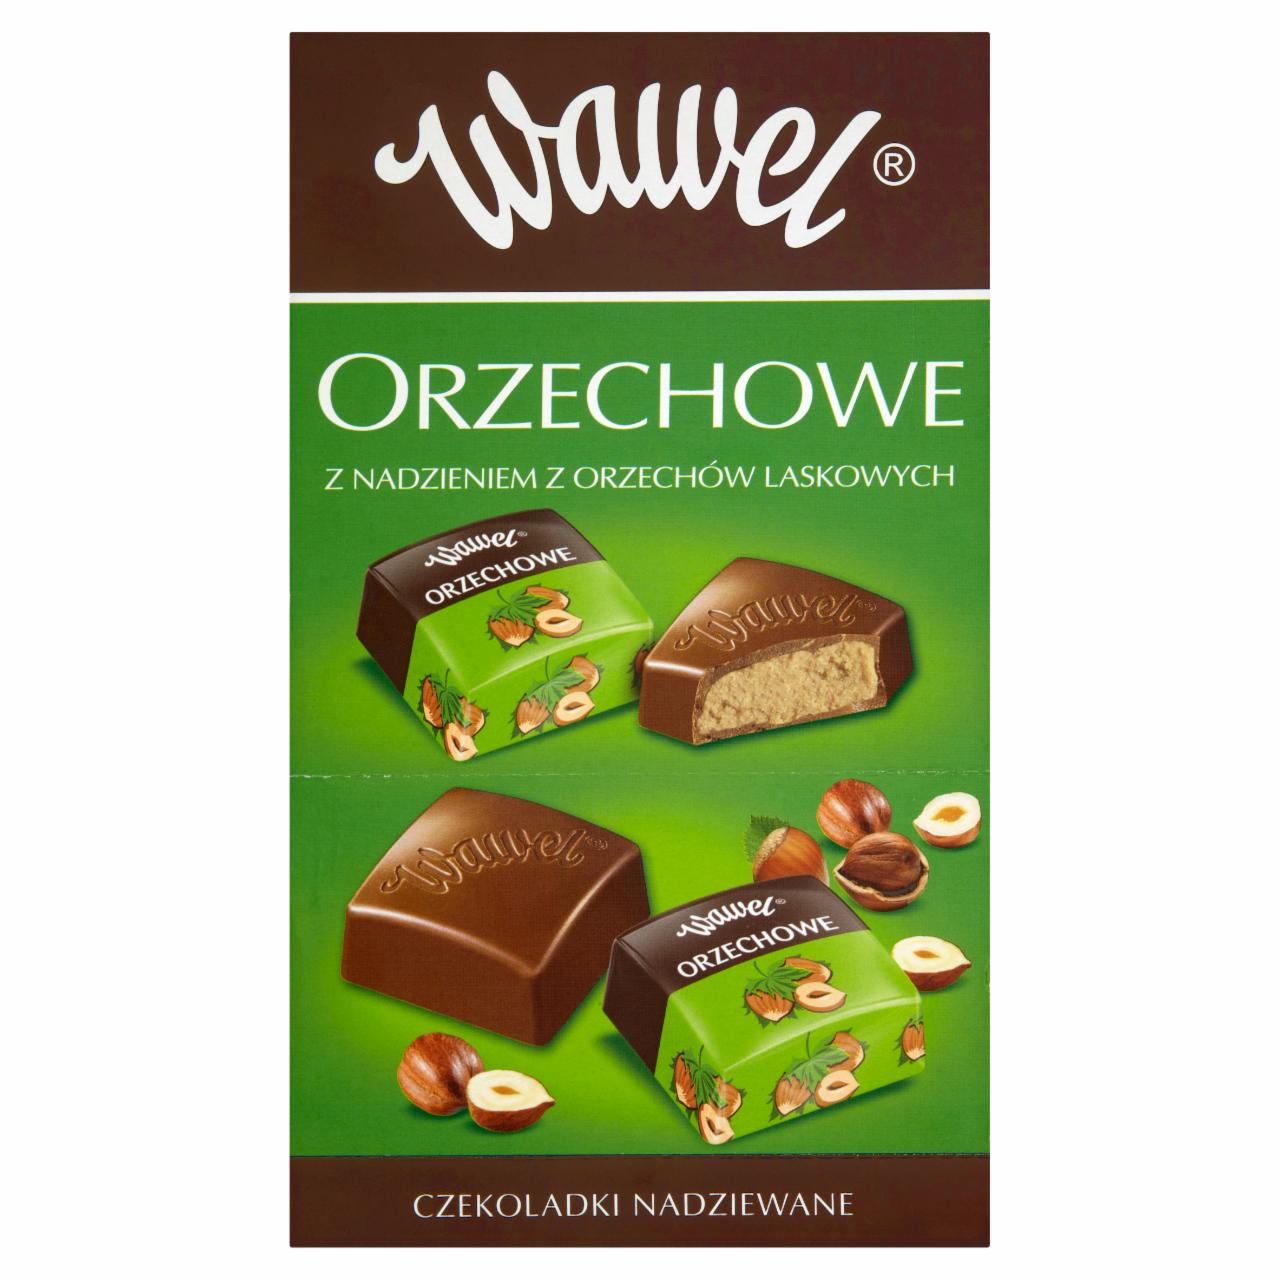 Zdjęcia - Wawel Orzechowe z nadzieniem z orzechów laskowych Czekoladki nadziewane 2,4 kg